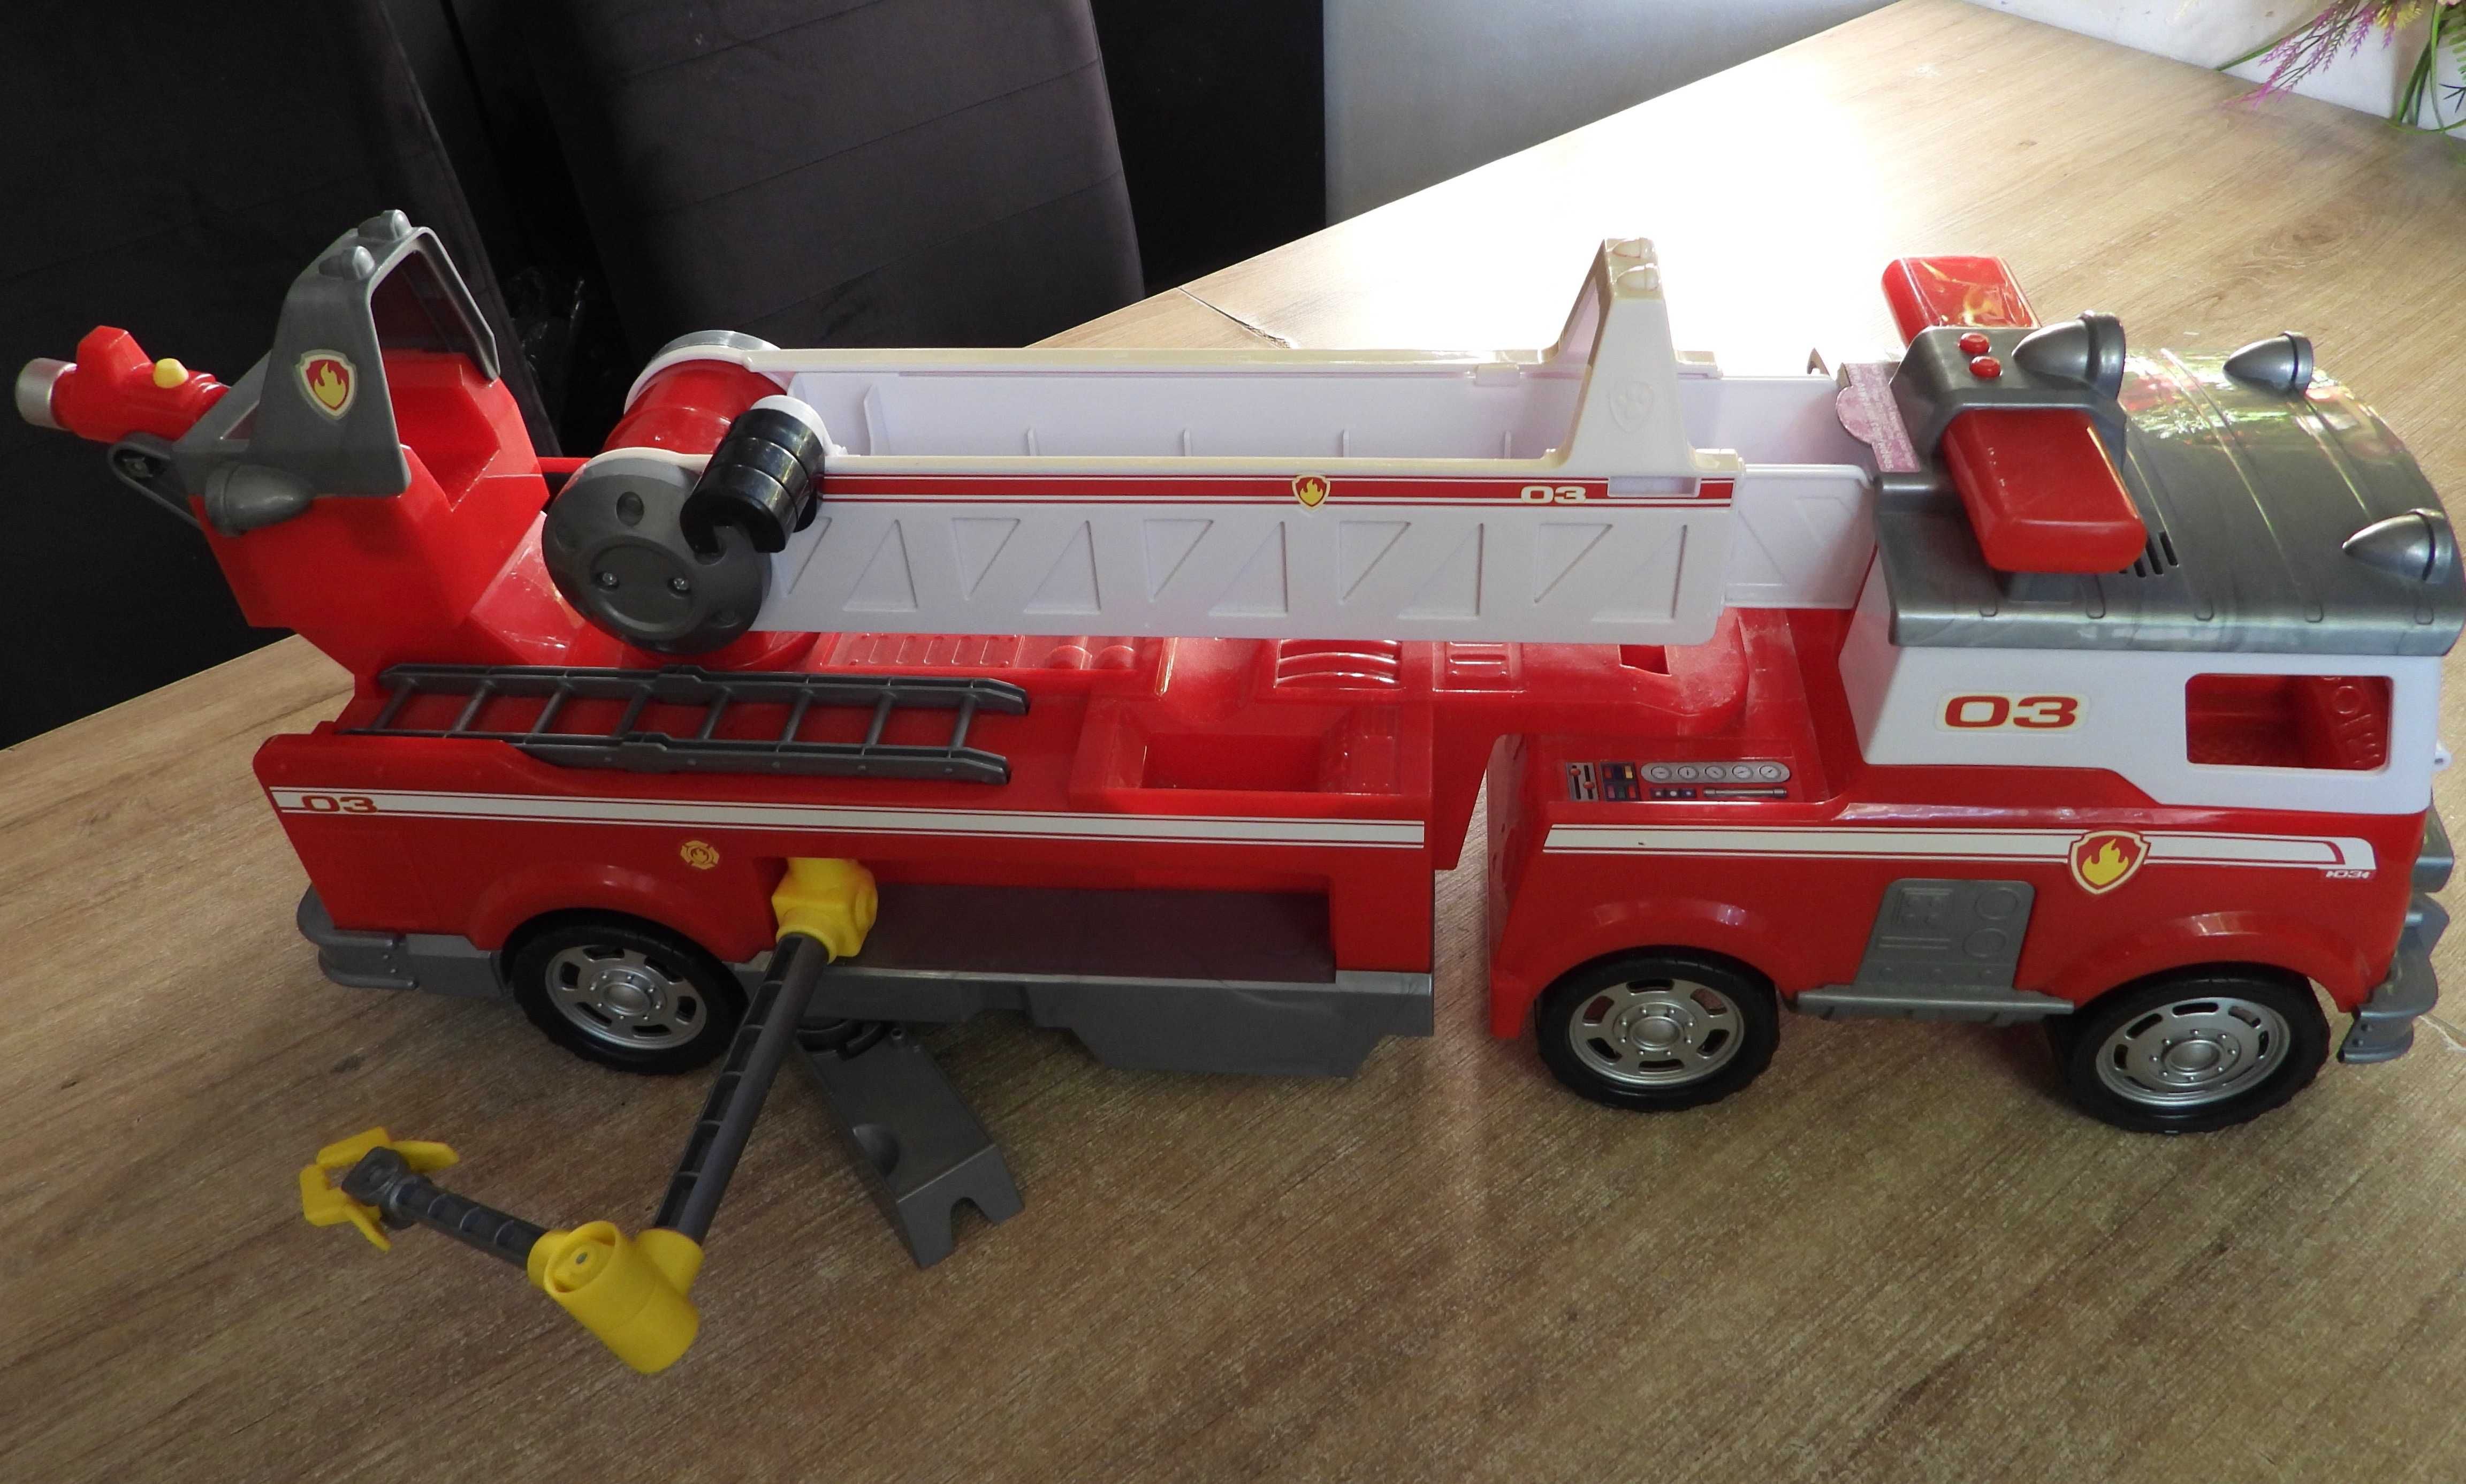 Wielki wóz strażacki Psi Patrol, 63 cm długości, straż pożarna